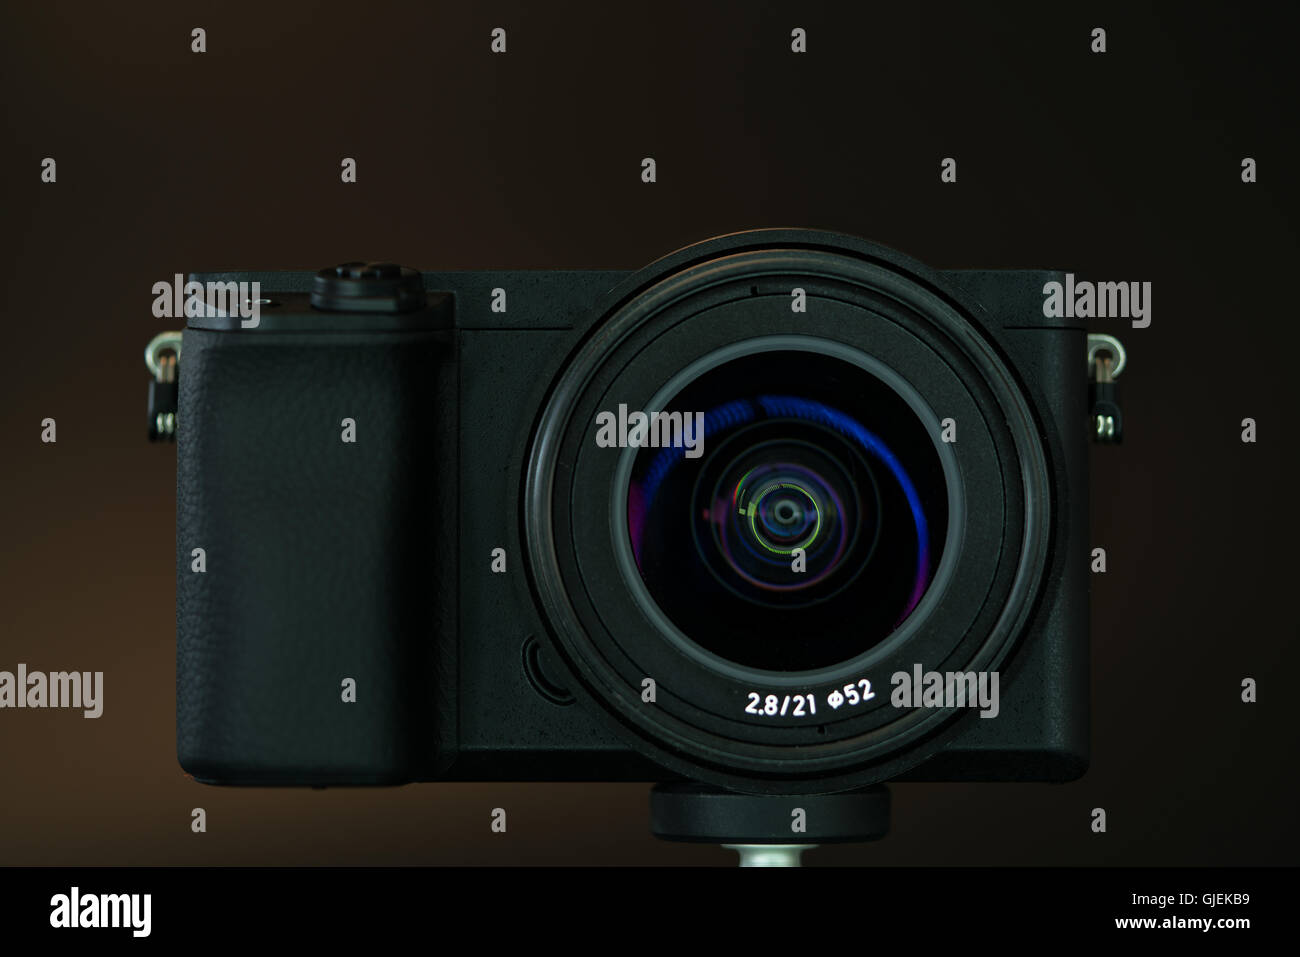 Spiegellose schnelle Fokussierung und 4K-shooting Digitalkamera mit 21mm Objektiv Stockfoto